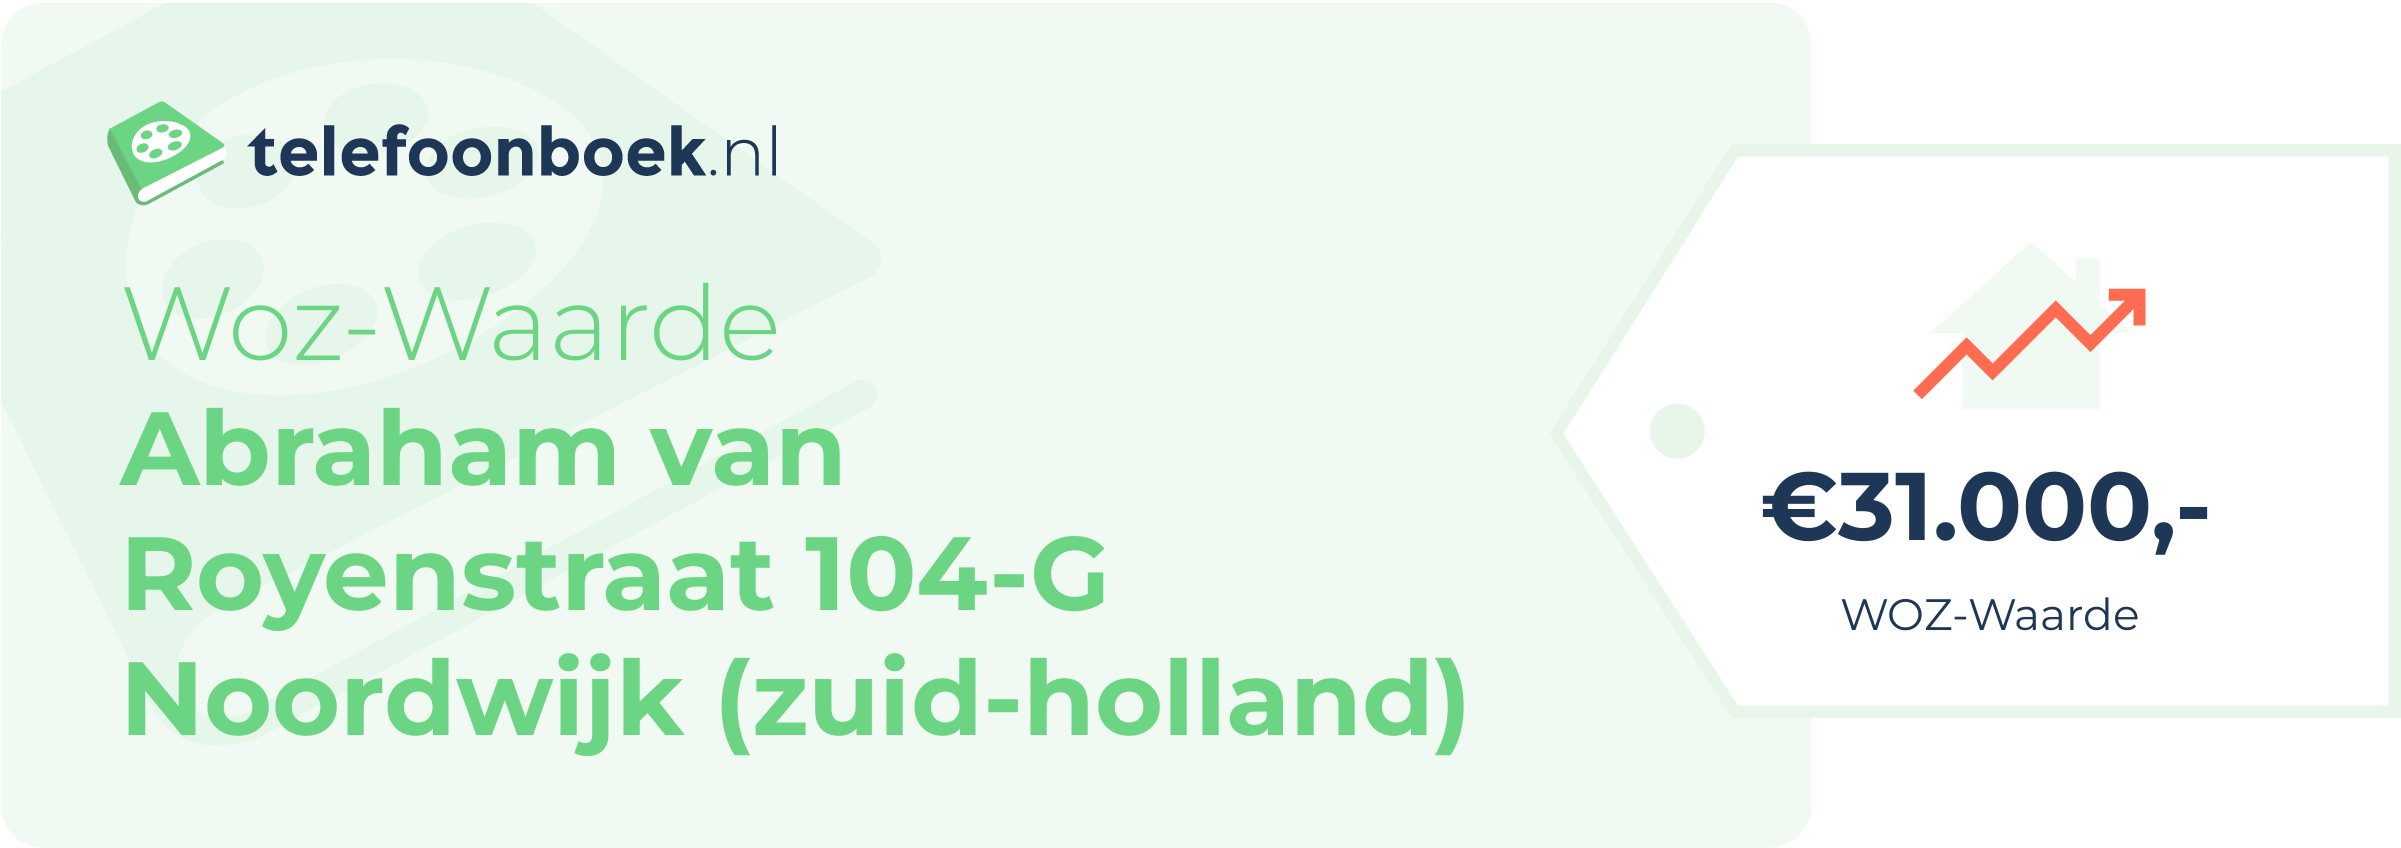 WOZ-waarde Abraham Van Royenstraat 104-G Noordwijk (Zuid-Holland)